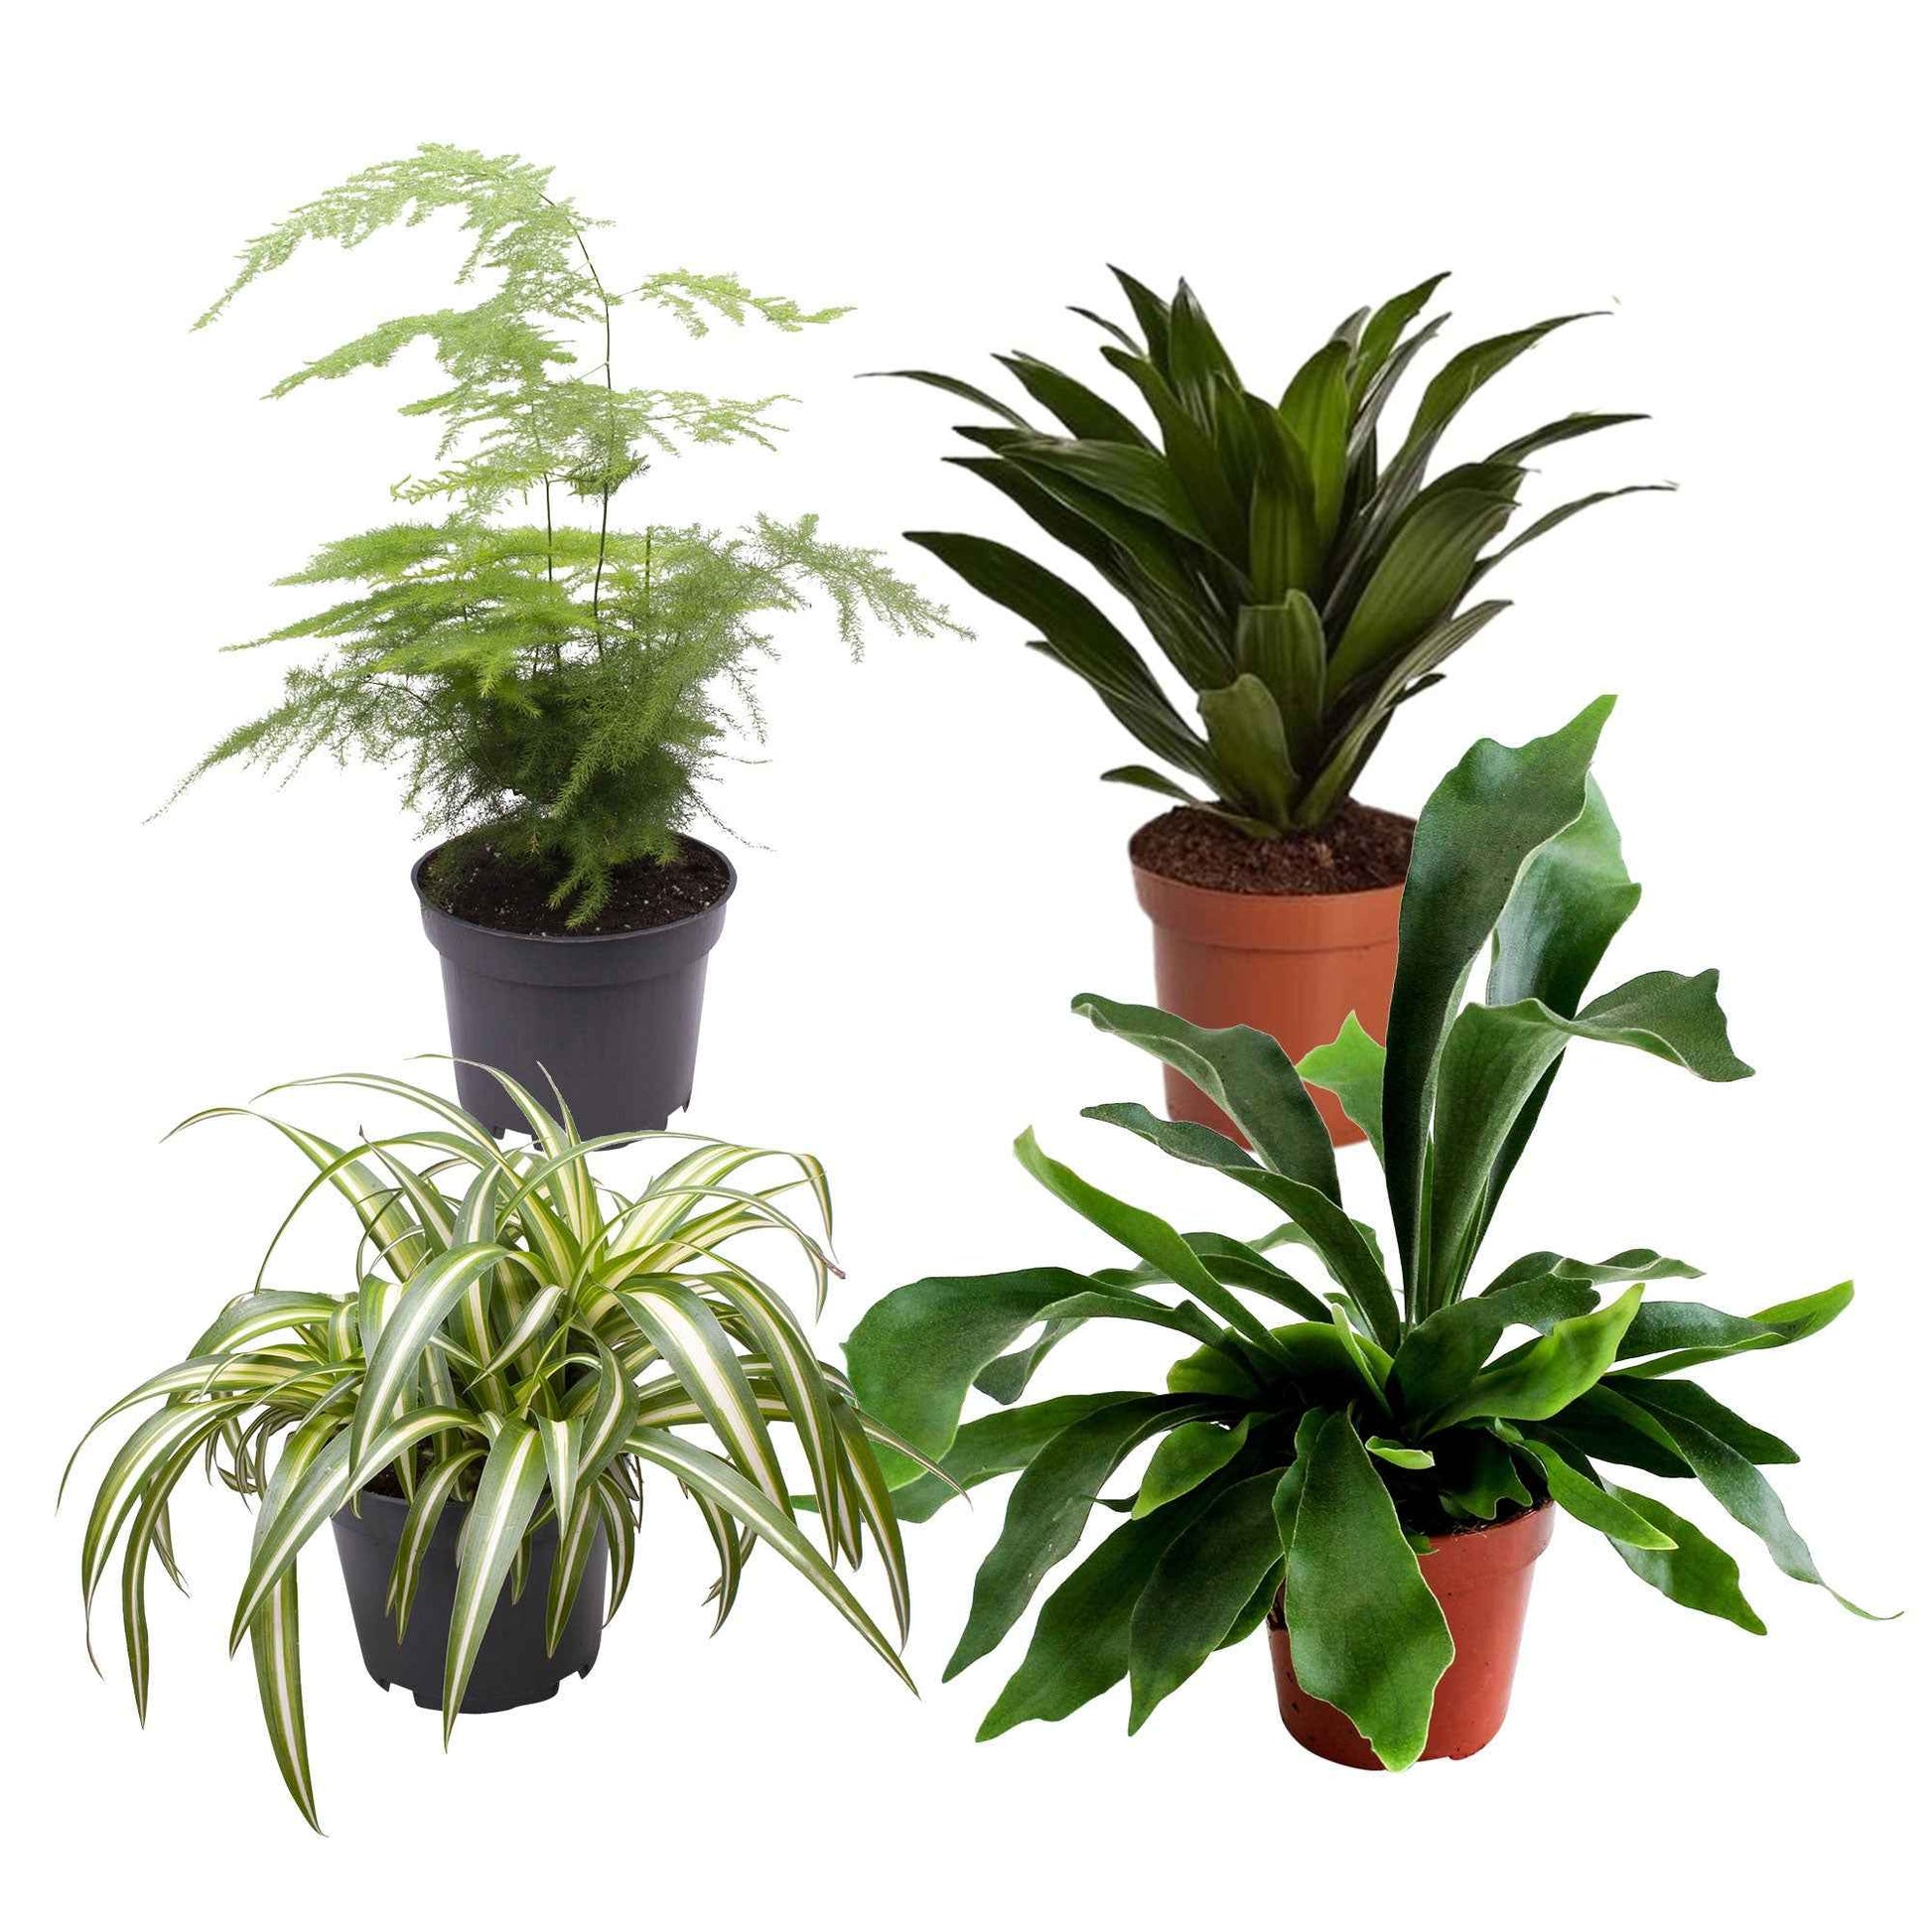 4x Plantes vertes d'intérieur - Mélange 'Gorgeous Green' - Chlorophythum - Plante araignée